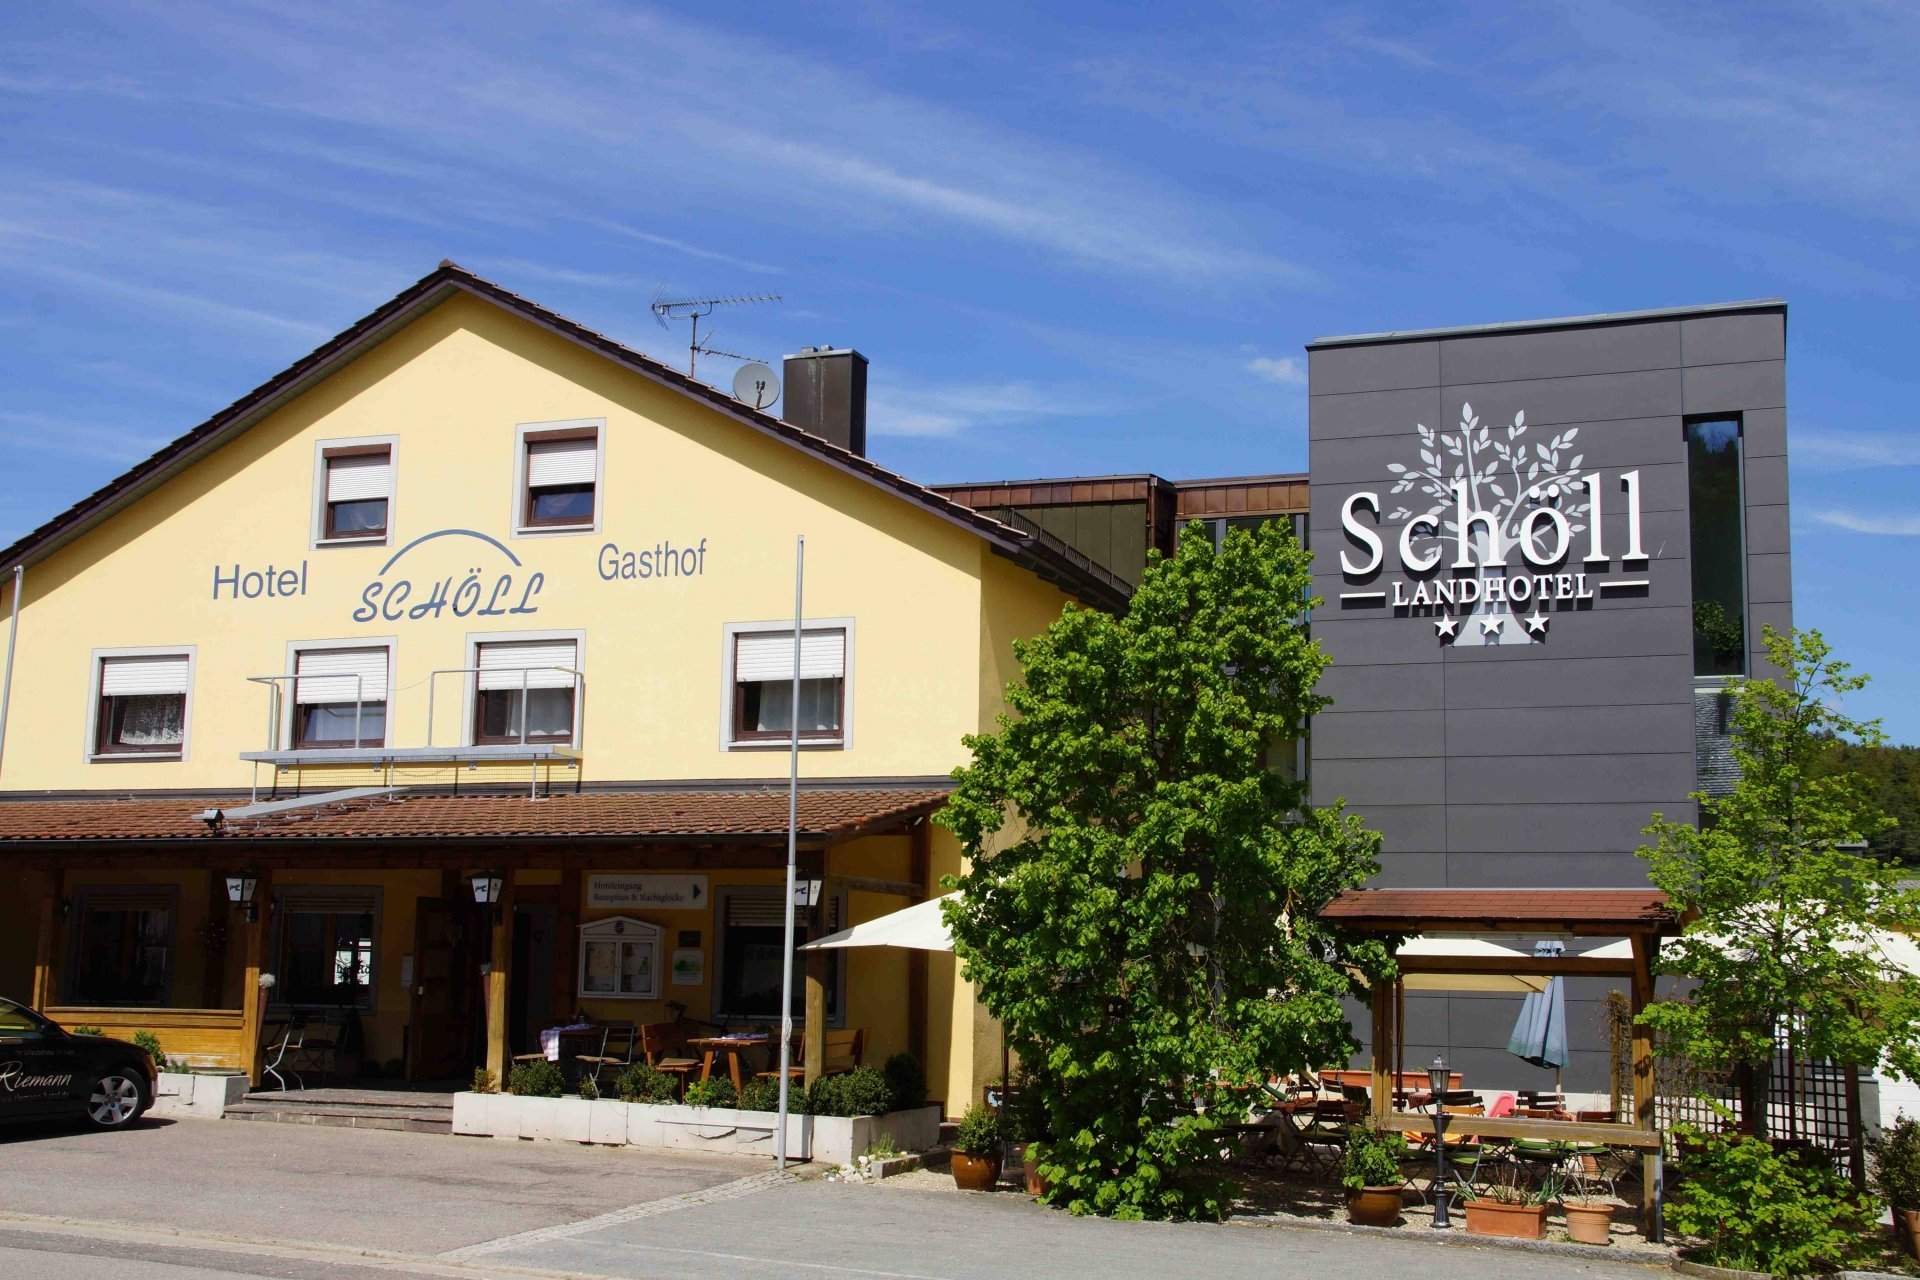 3 Tage Bayerische Auszeit mit Alpaka Wanderung in der Oberpfalz – LandKomforthotel Schöll (3 Sterne) in Parsberg, Bayern inkl. Halbpension